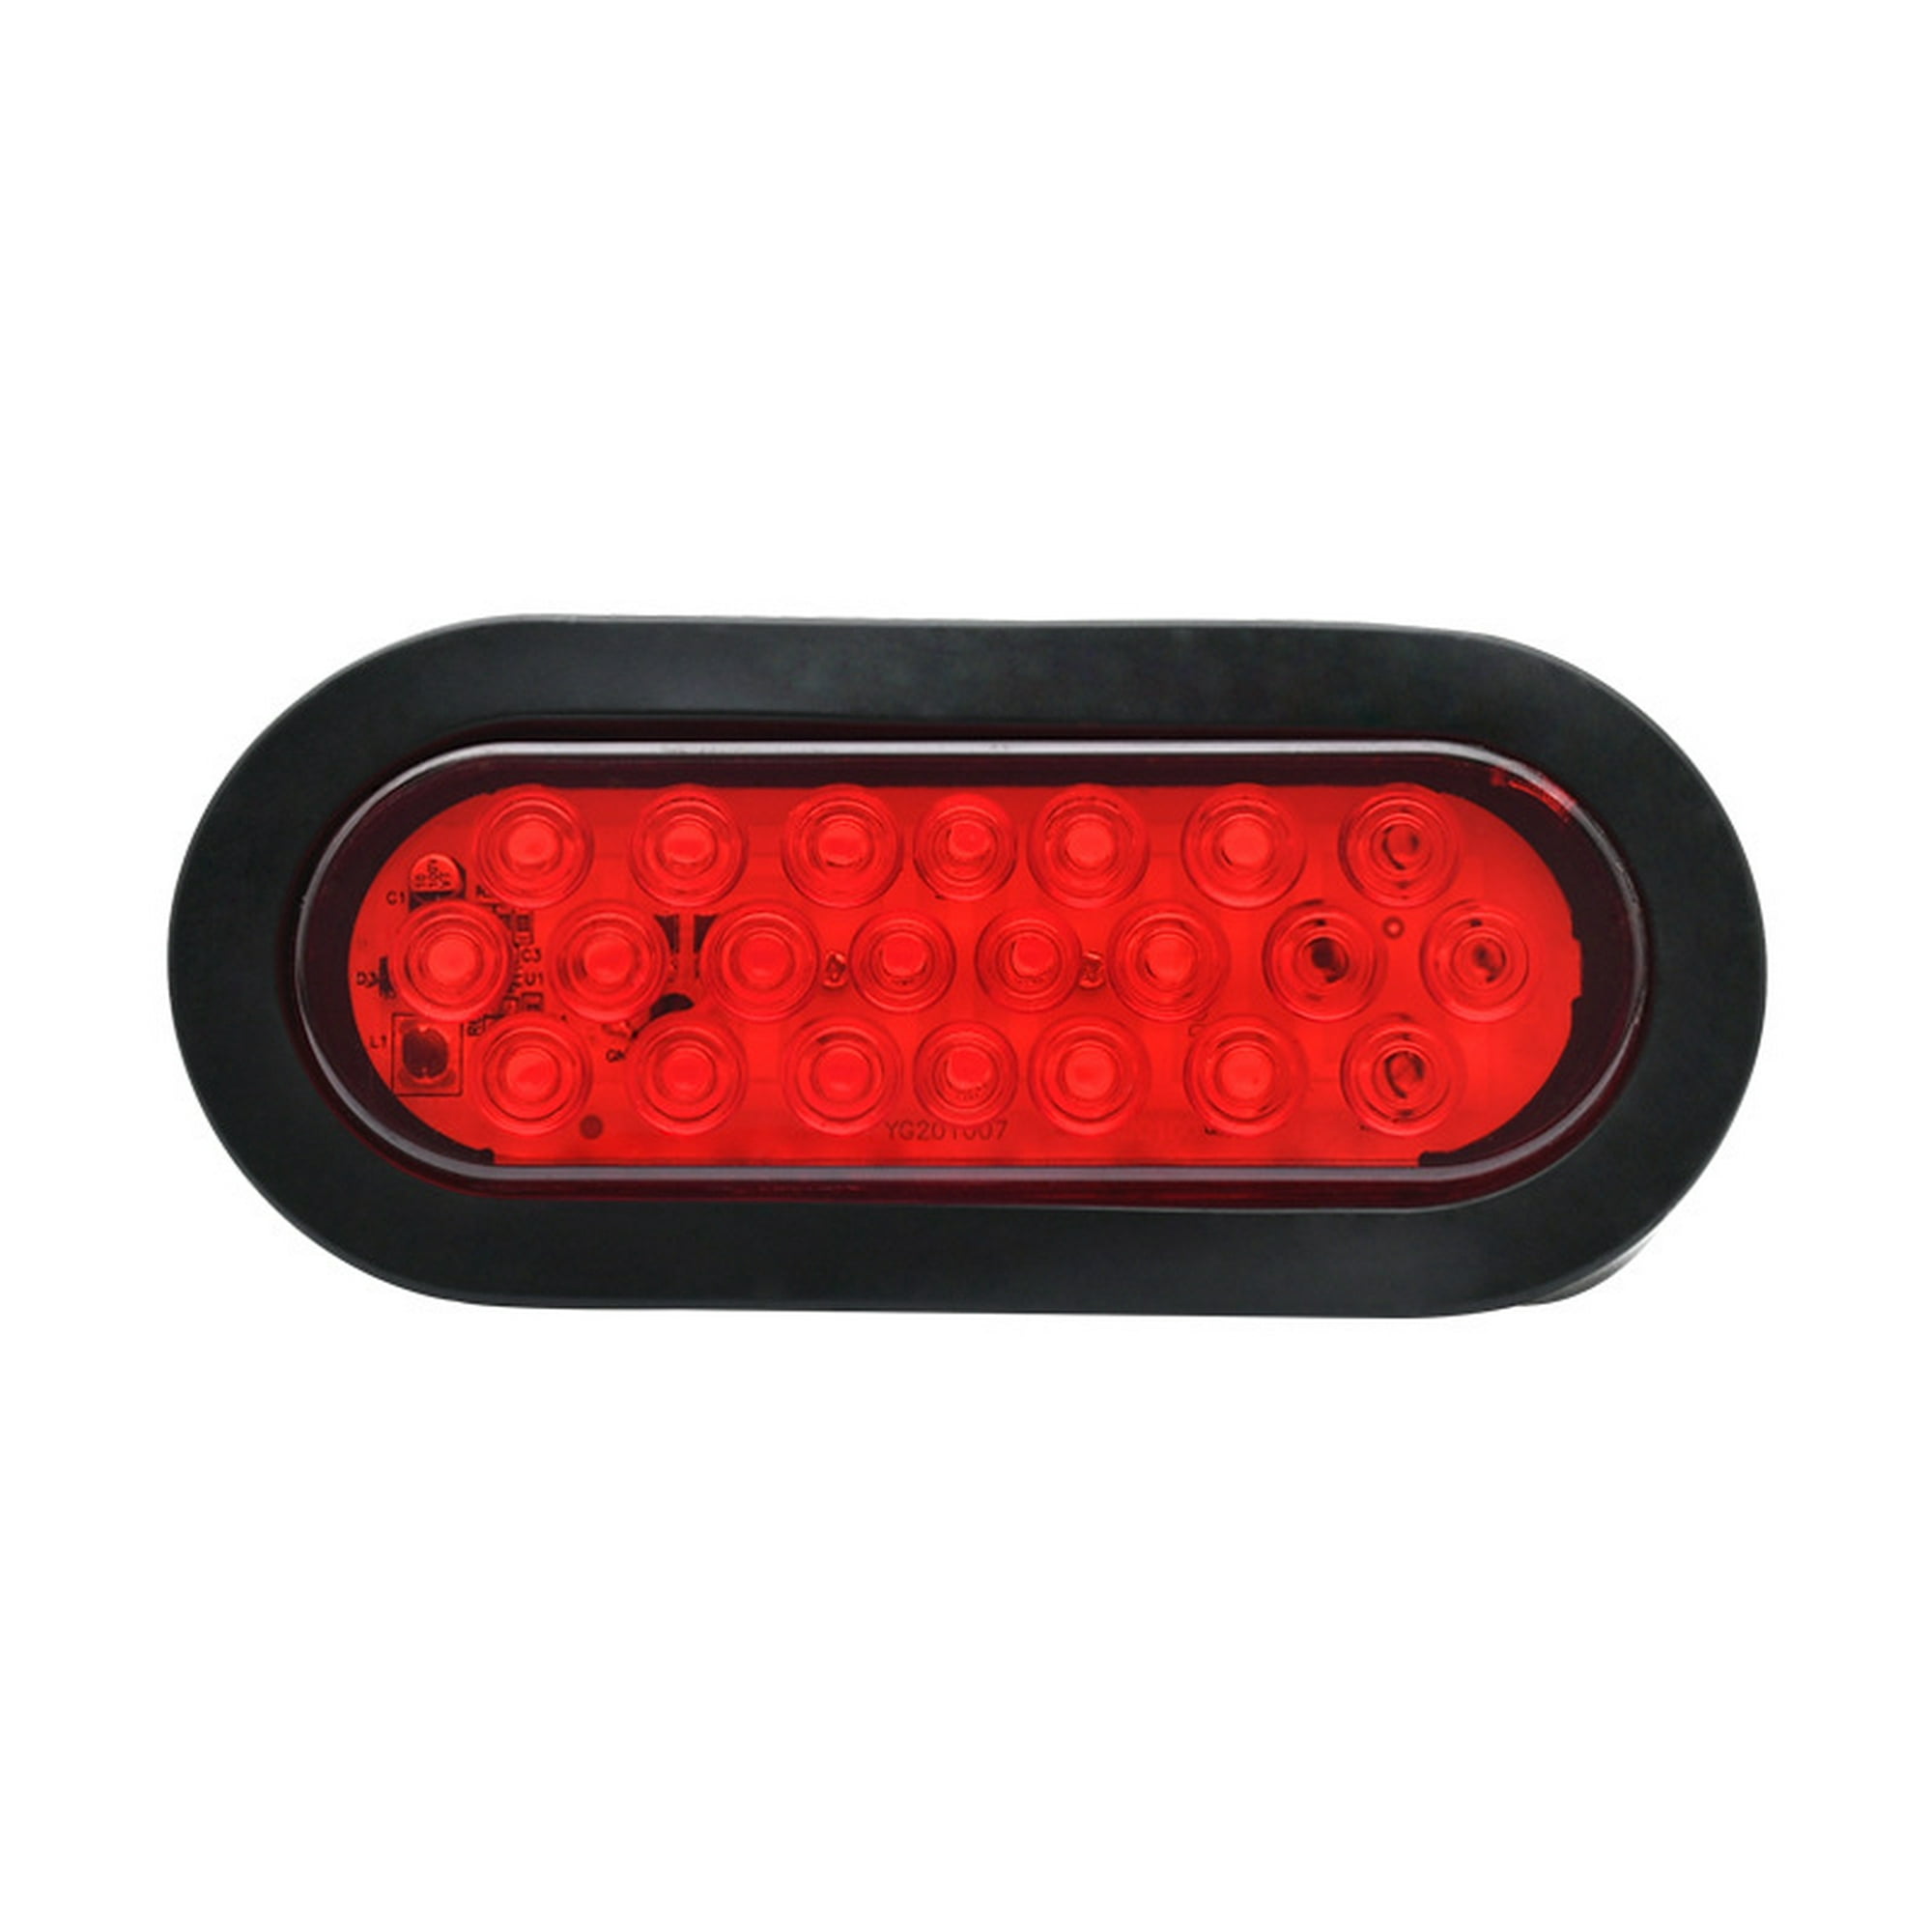 Juego de luces traseras LED ovaladas para remolque de 6.0 in, 2 color ámbar  y 2 color rojo